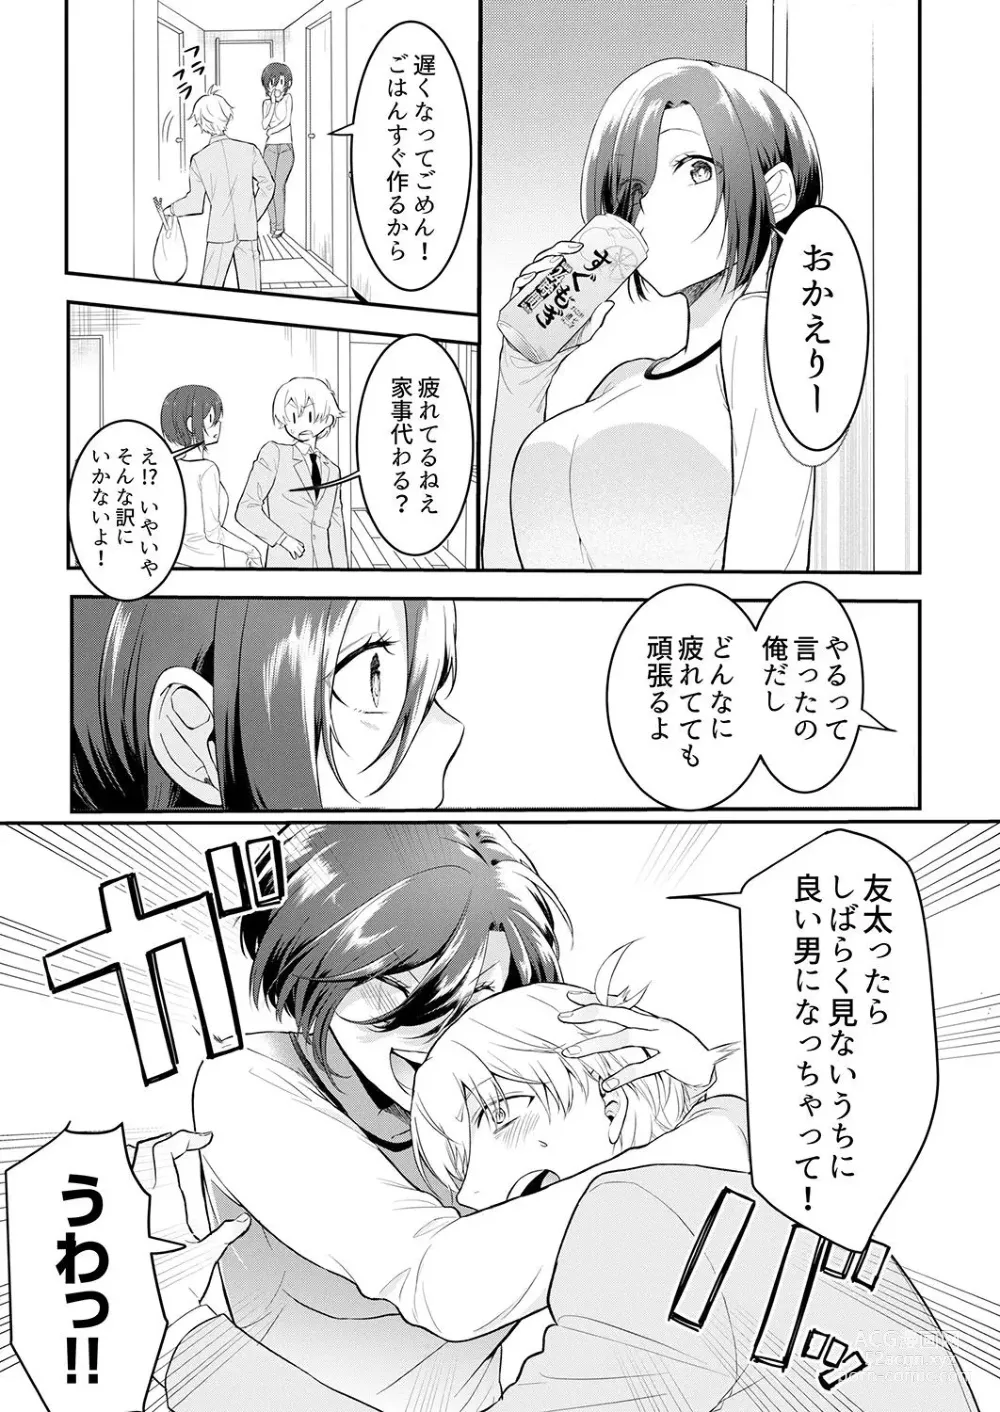 Page 5 of manga Hageshii SEX de Motokare o Wasuresasete ~ Yotta Furi shite Izanau Ane